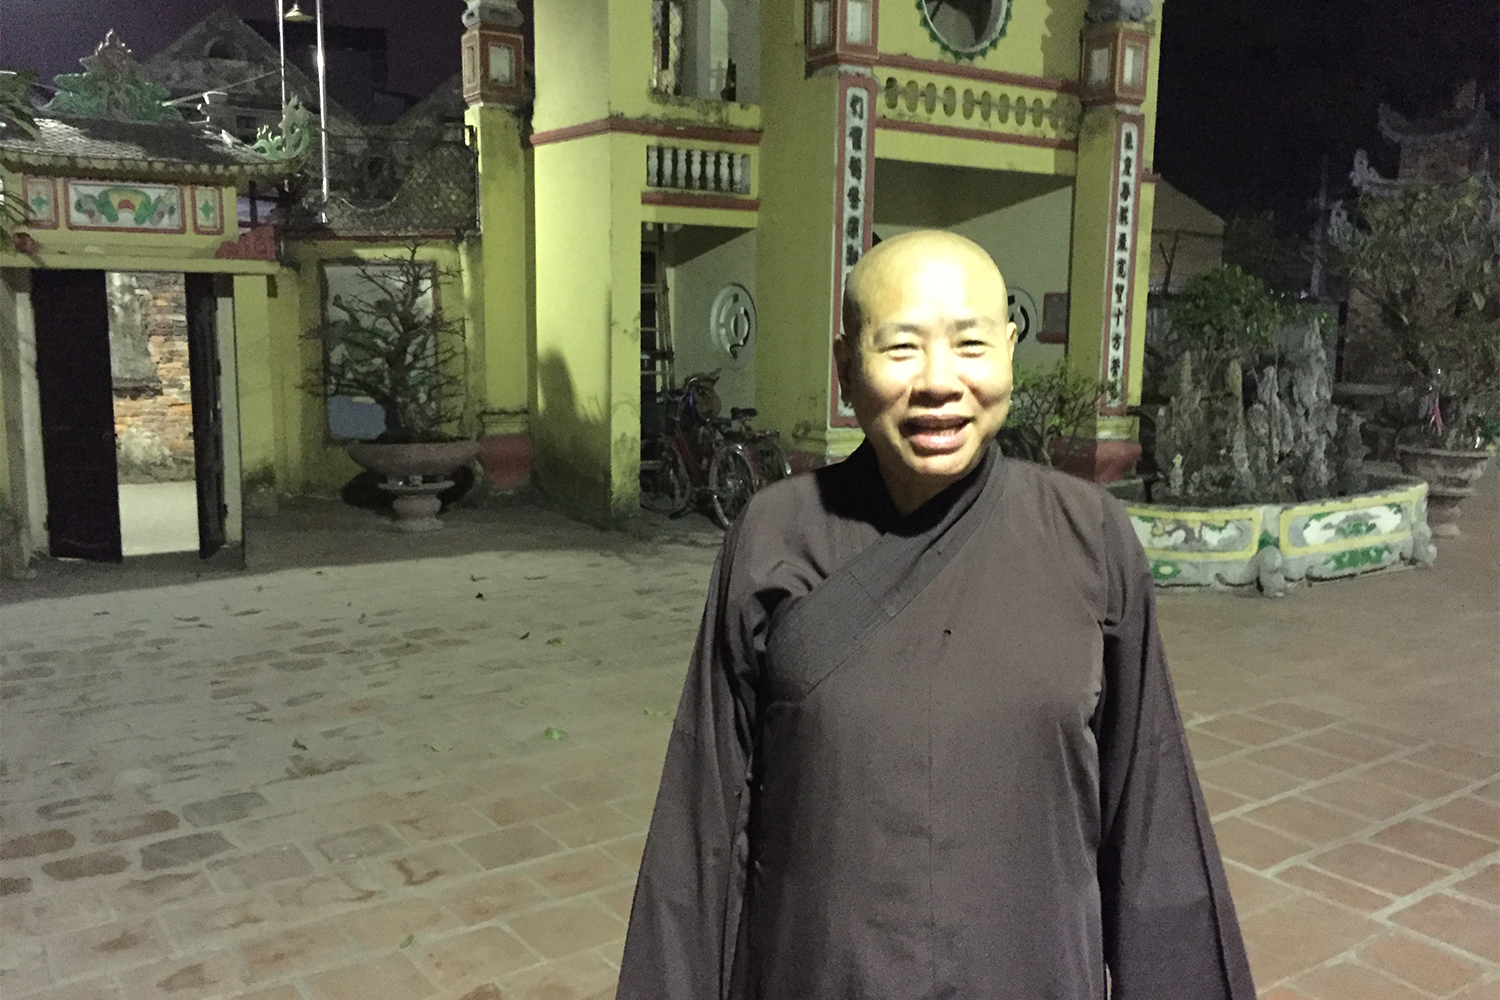 Il faisait nuit et l’éclairage n’était pas optimal pour prendre une photo. Mais la moine a insisté pour voir à quoi elle ressemblait sur la photo. 